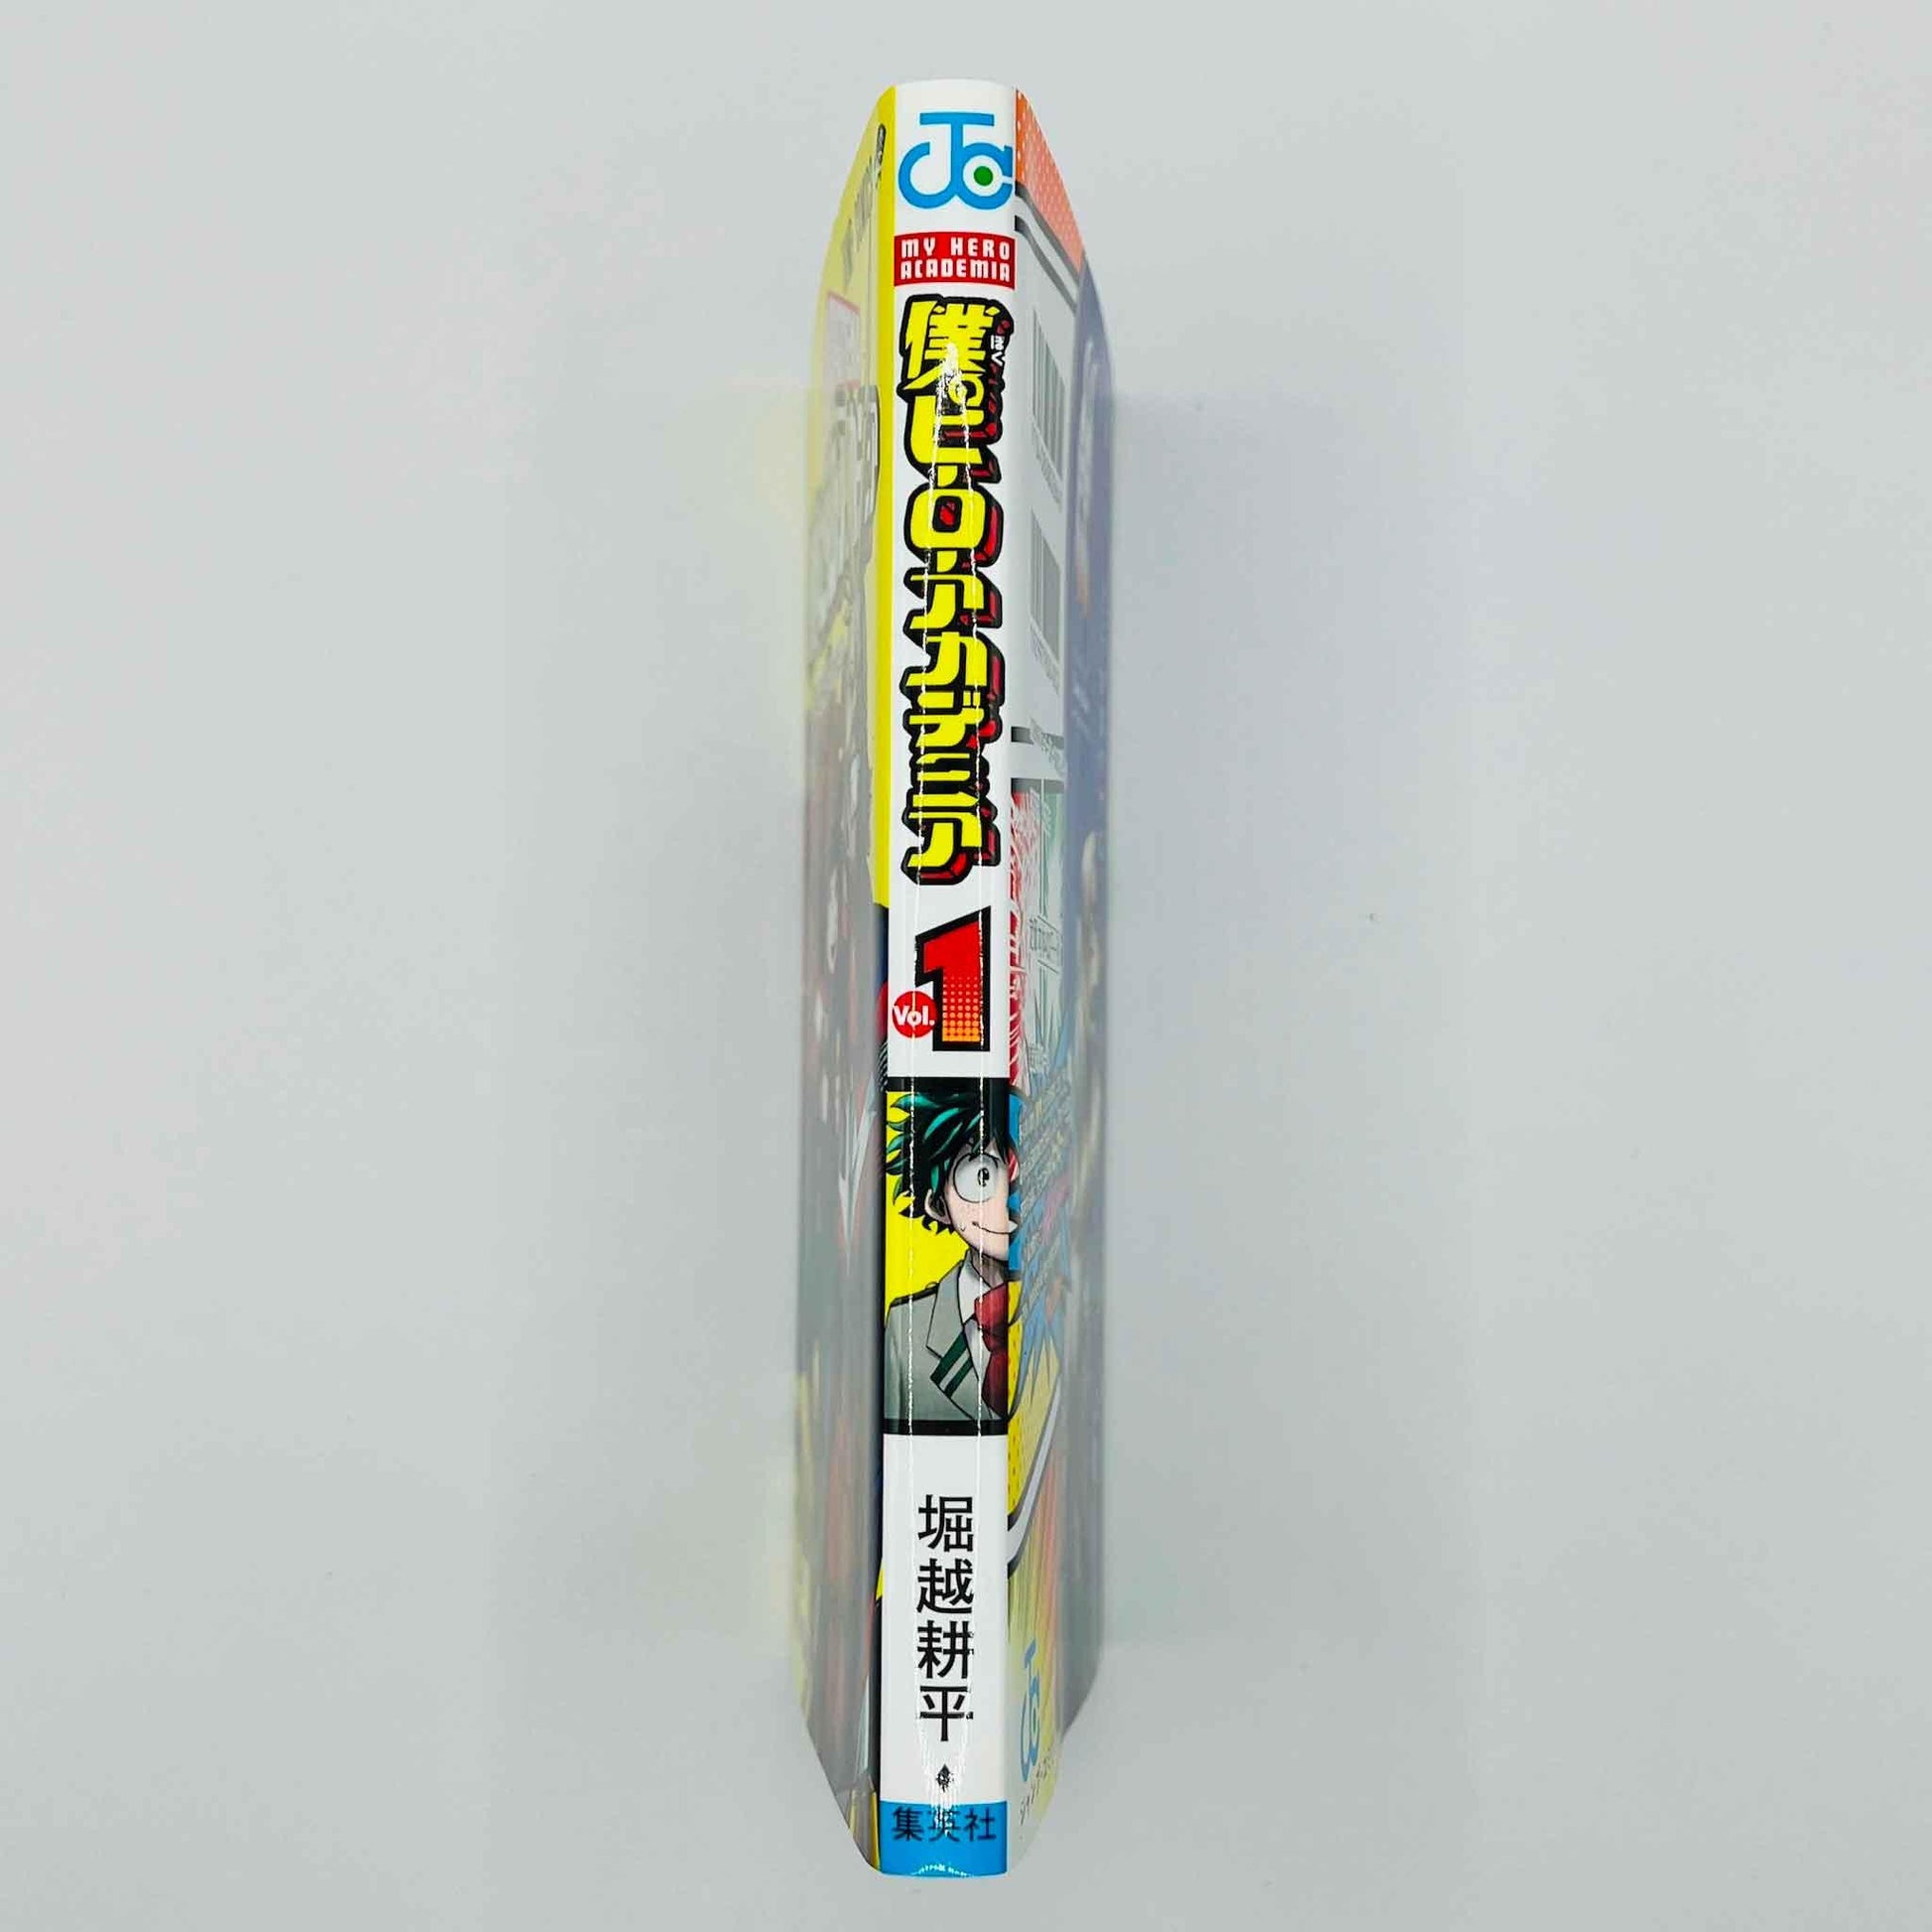 My Hero Academia - Volume 01 - 1stPrint.net - 1st First Print Edition Manga Store - M-MHA-01-005